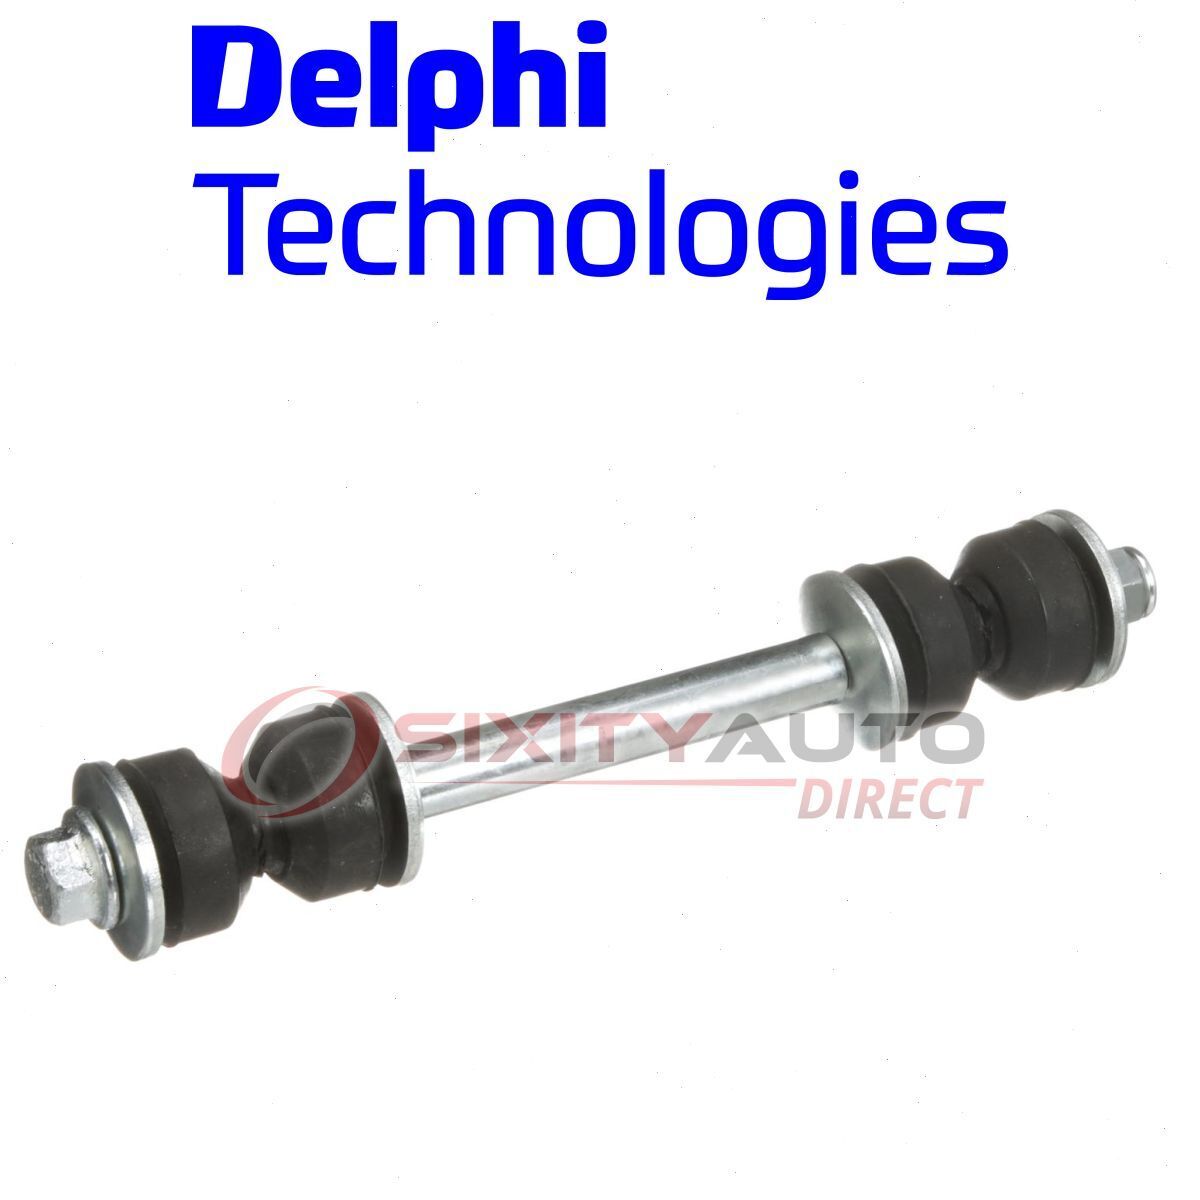 Delphi Front Suspension Stabilizer Bar Link Kit for 1978-1981 Oldsmobile kd